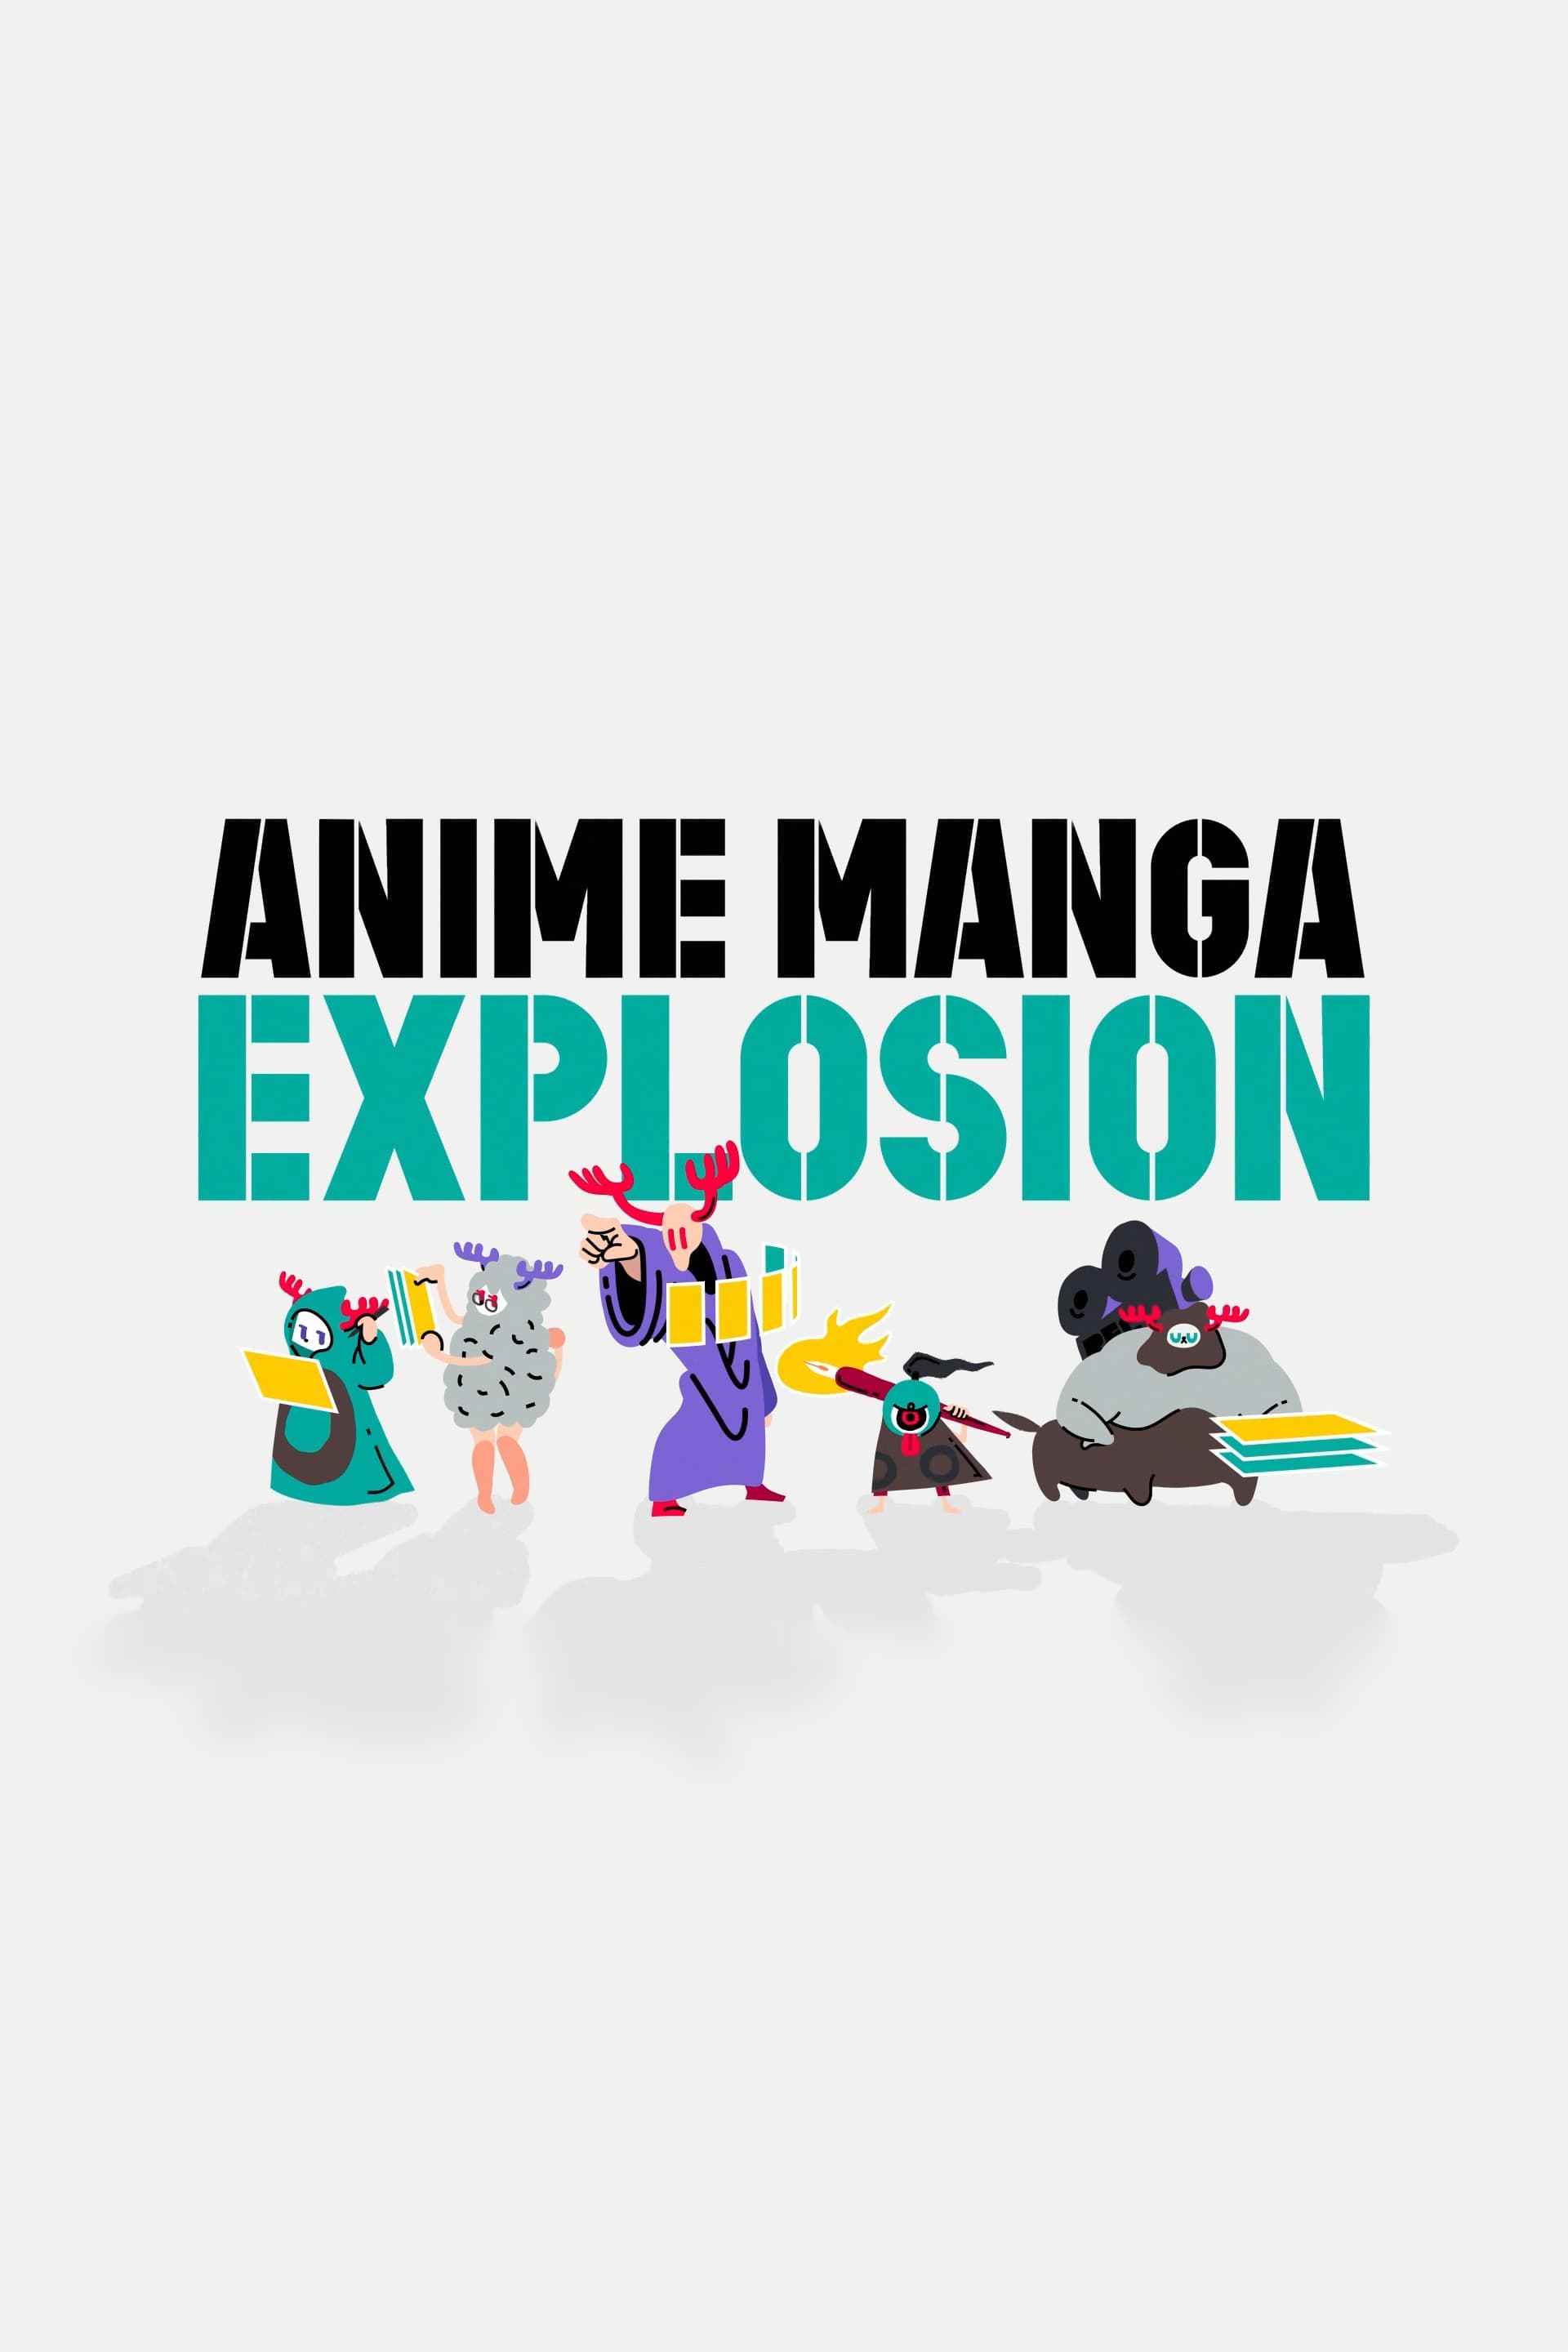 ANIME MANGA EXPLOSION TV Shows About Mangaka